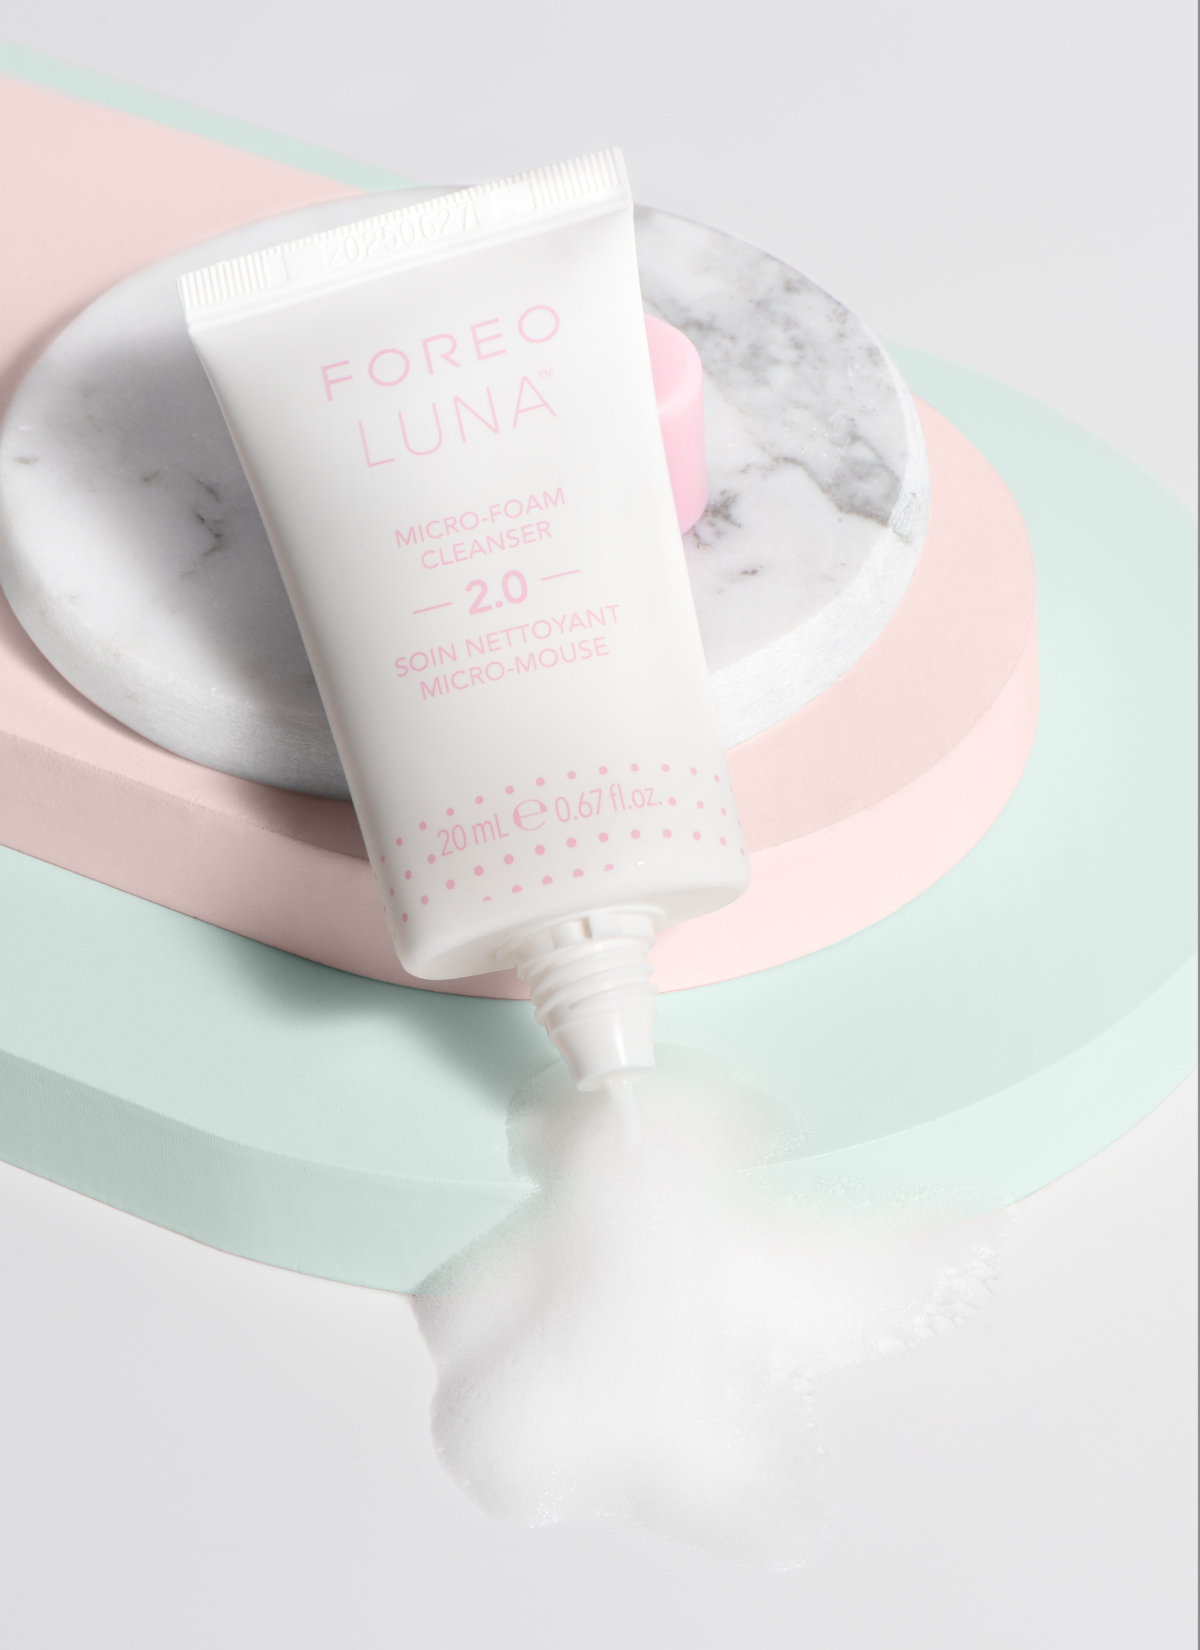 Foreo Luna Micro-Foam cleanser 